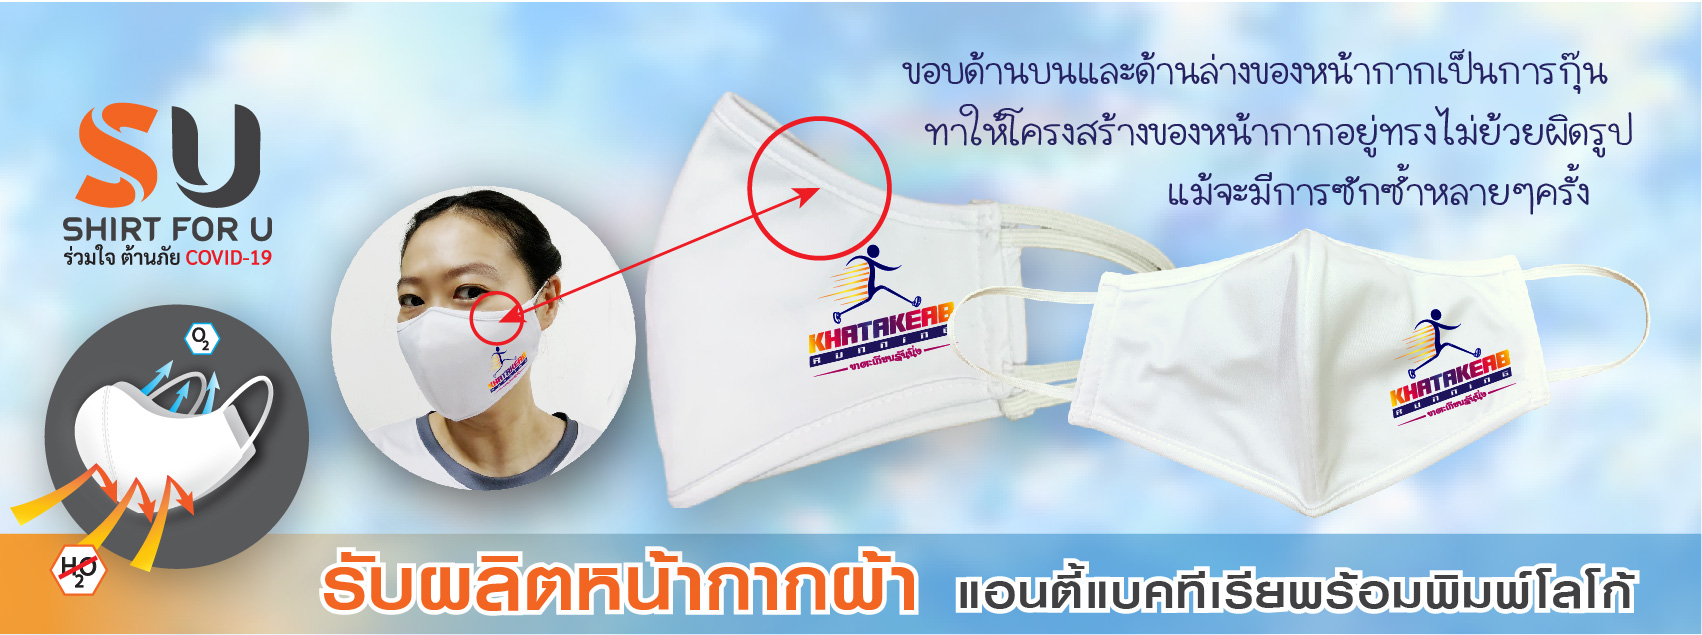 shirtforu banner facemask